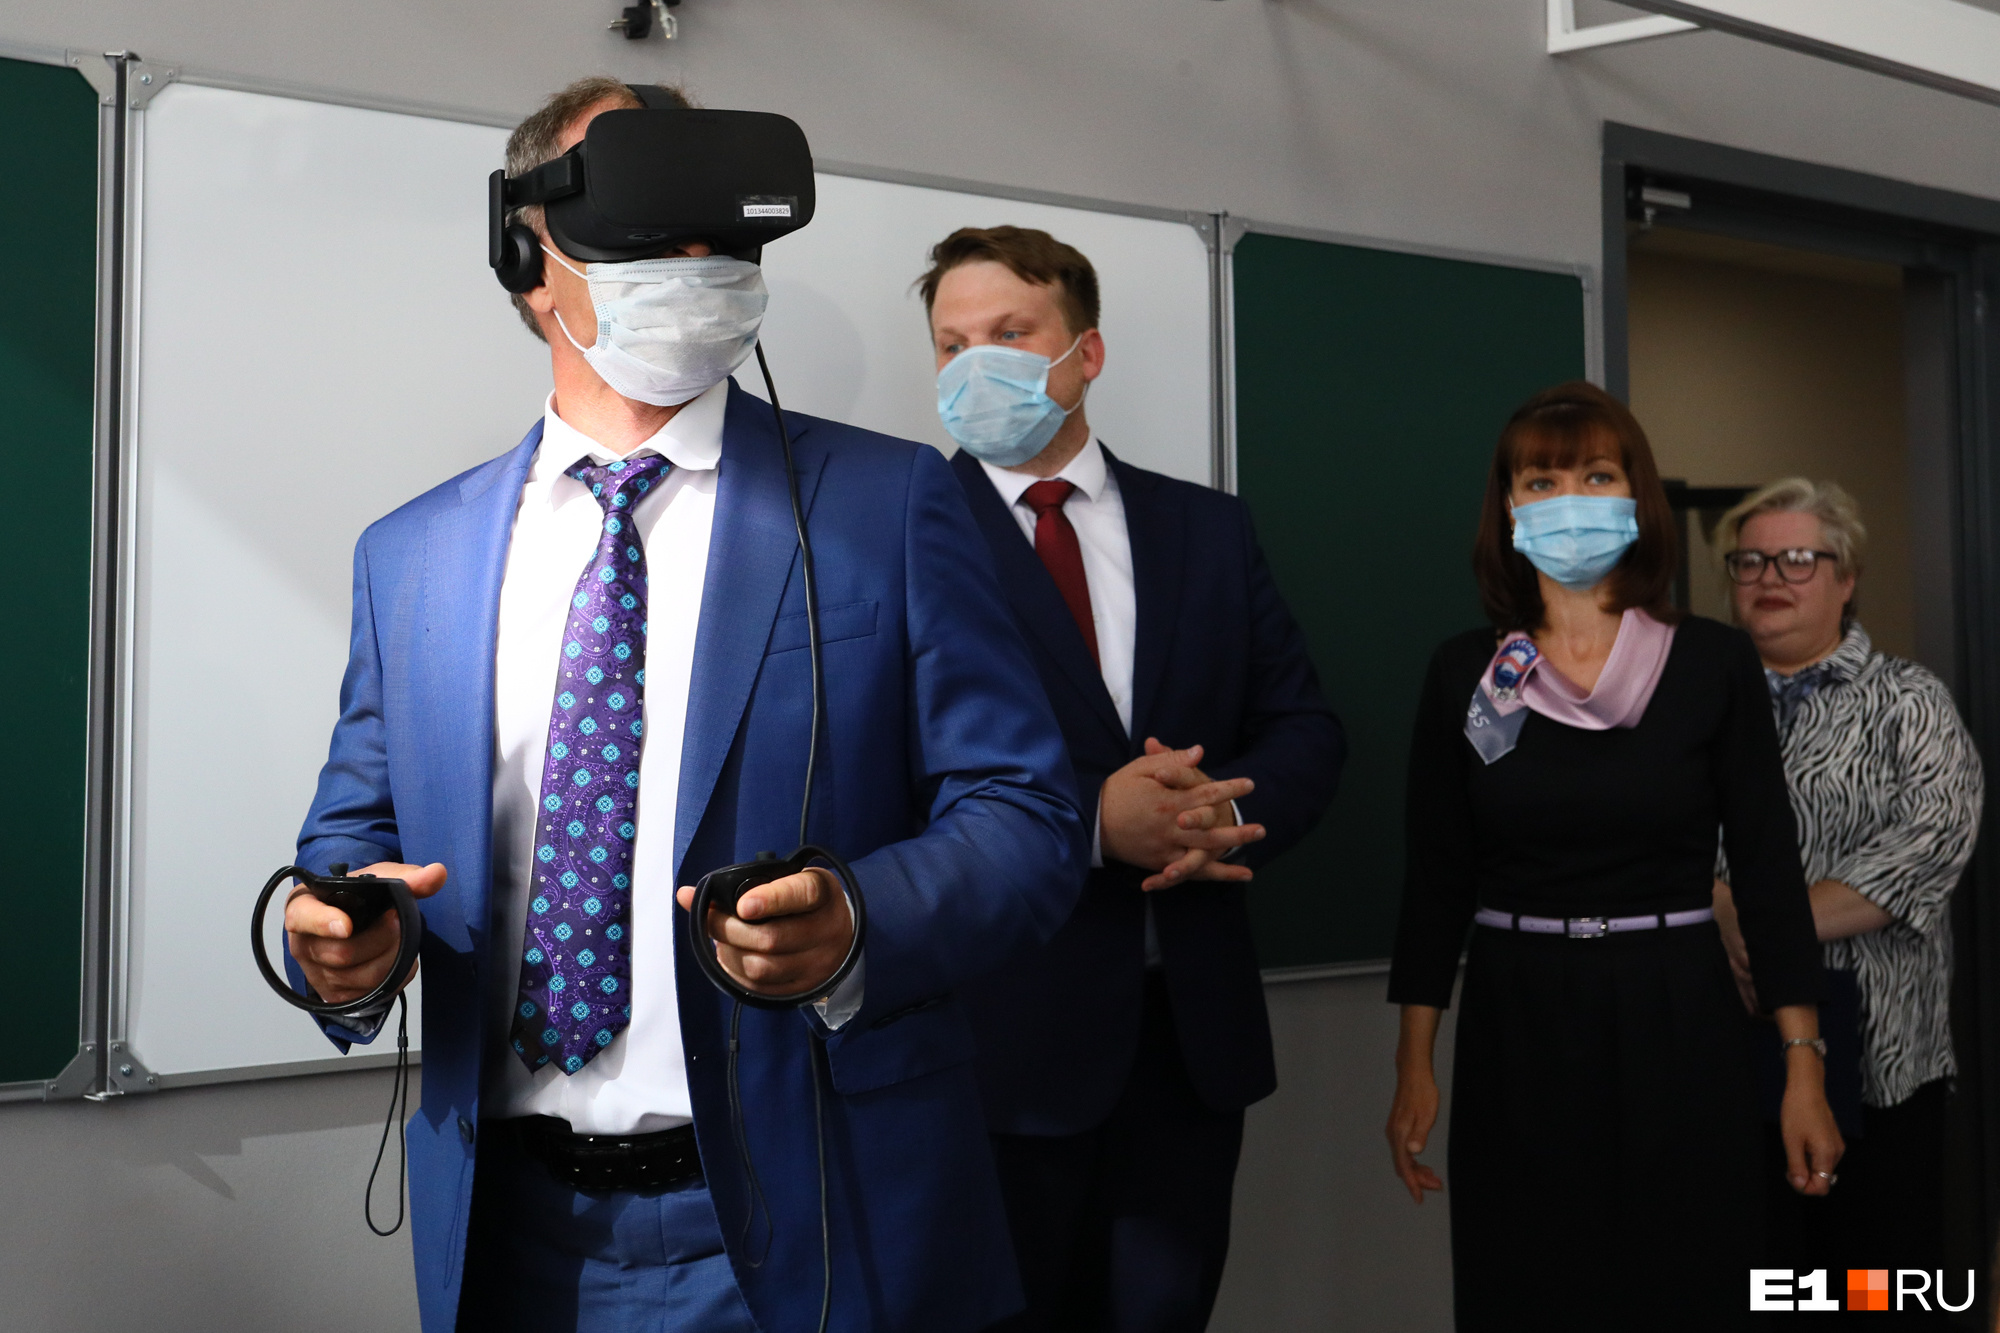 Очки виртуальной реальности протестировал мэр Алексей Орлов